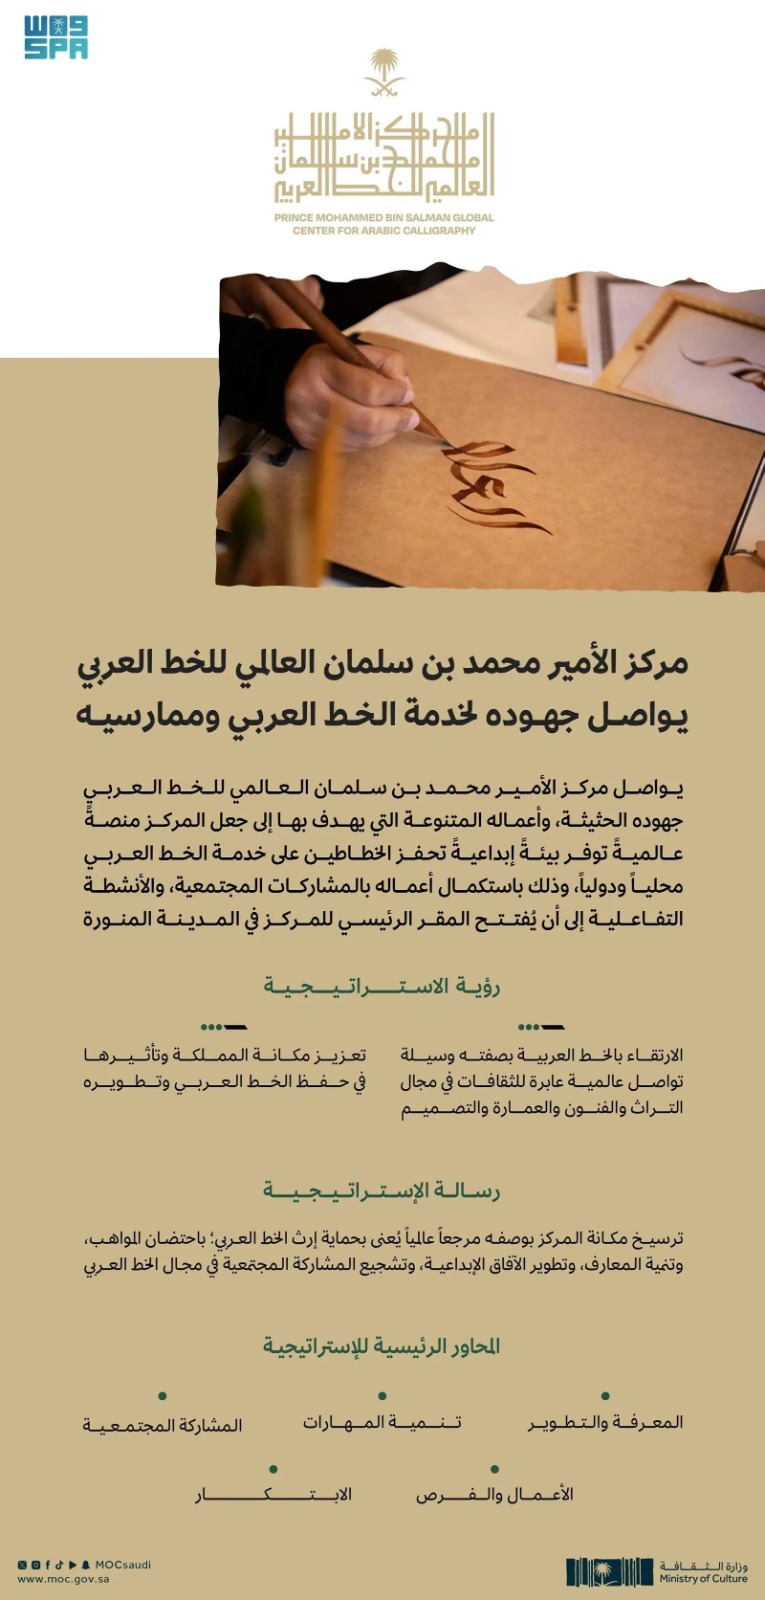 مركز الأمير محمد بن سلمان العالمي للخط العربي يواصل أعماله لخدمة الخط العربي